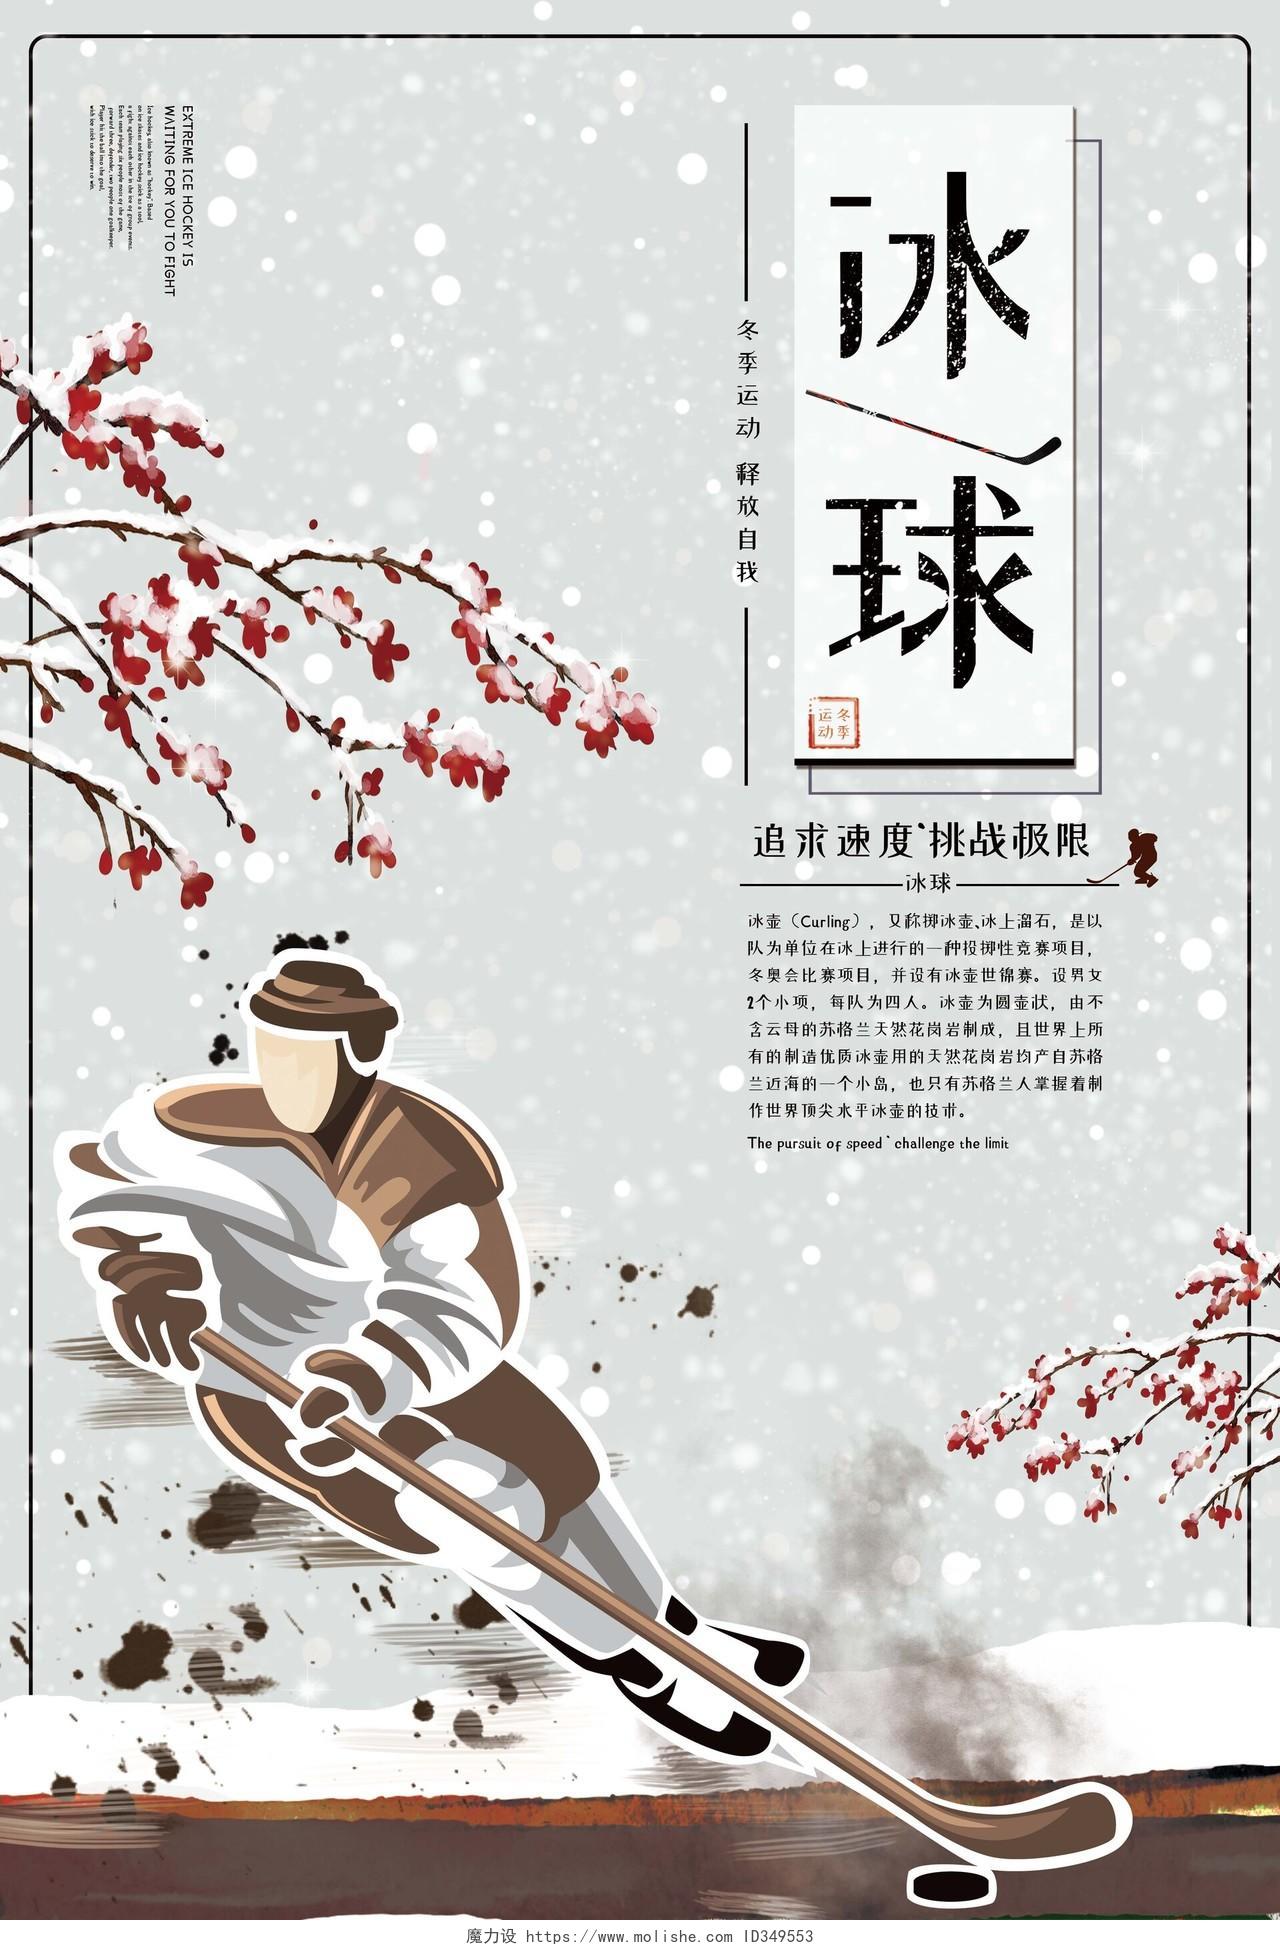 简约手绘冬天冰雪运动冰球比赛冬奥会宣传海报